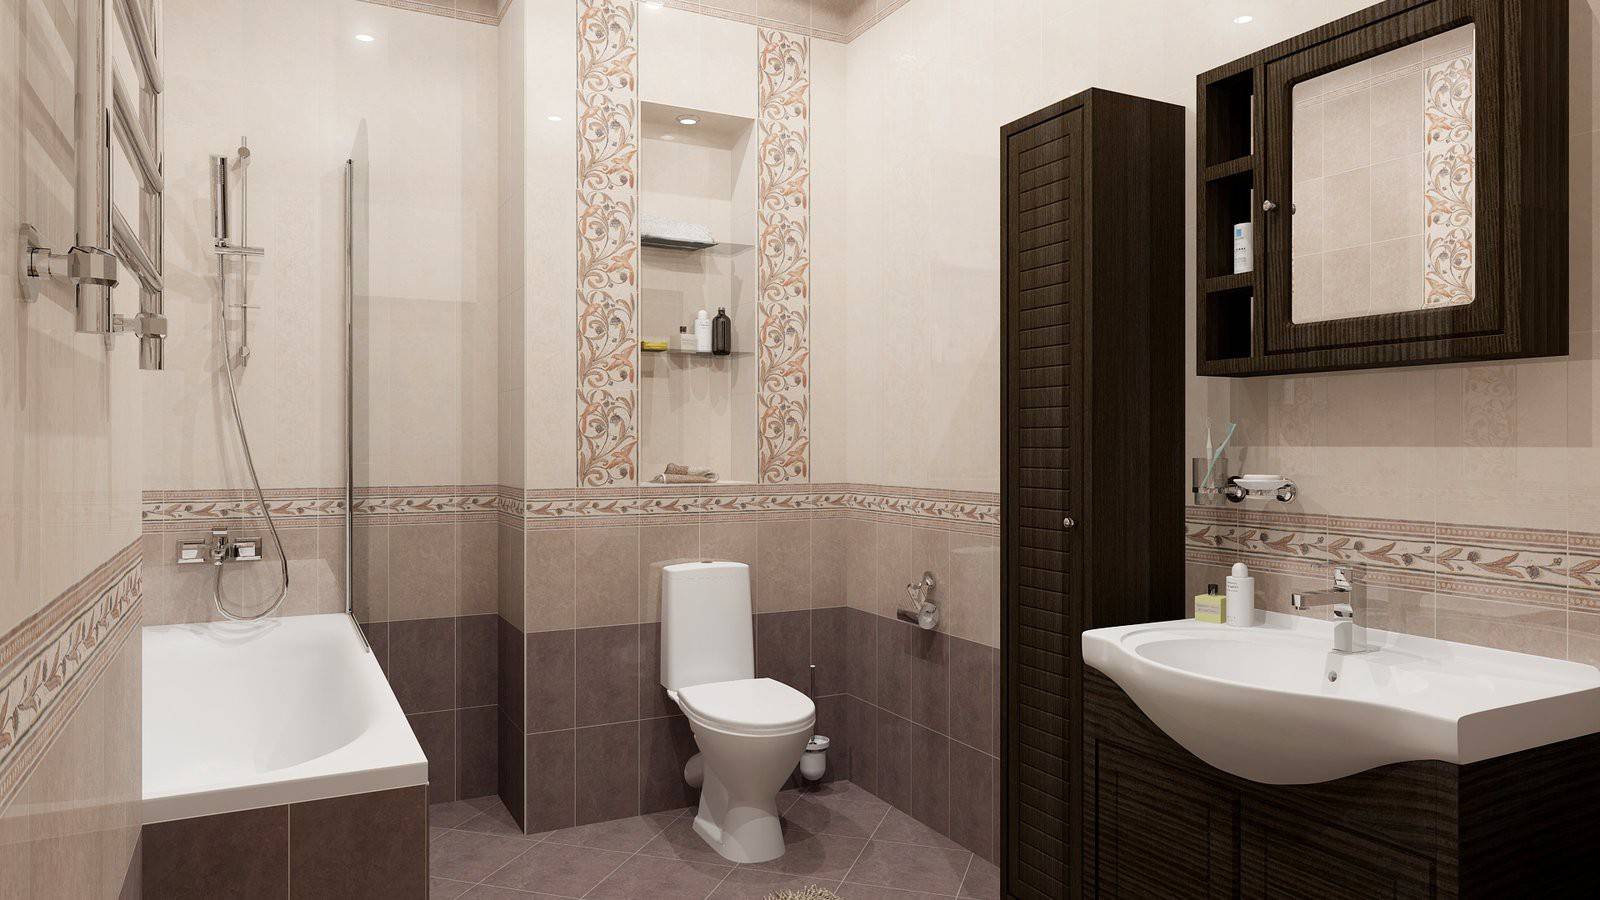 Сколько стоит сделать ремонт ванной с плиткой, сантехникой и мебелью? разбор на конкретном примере - дизайн для дома